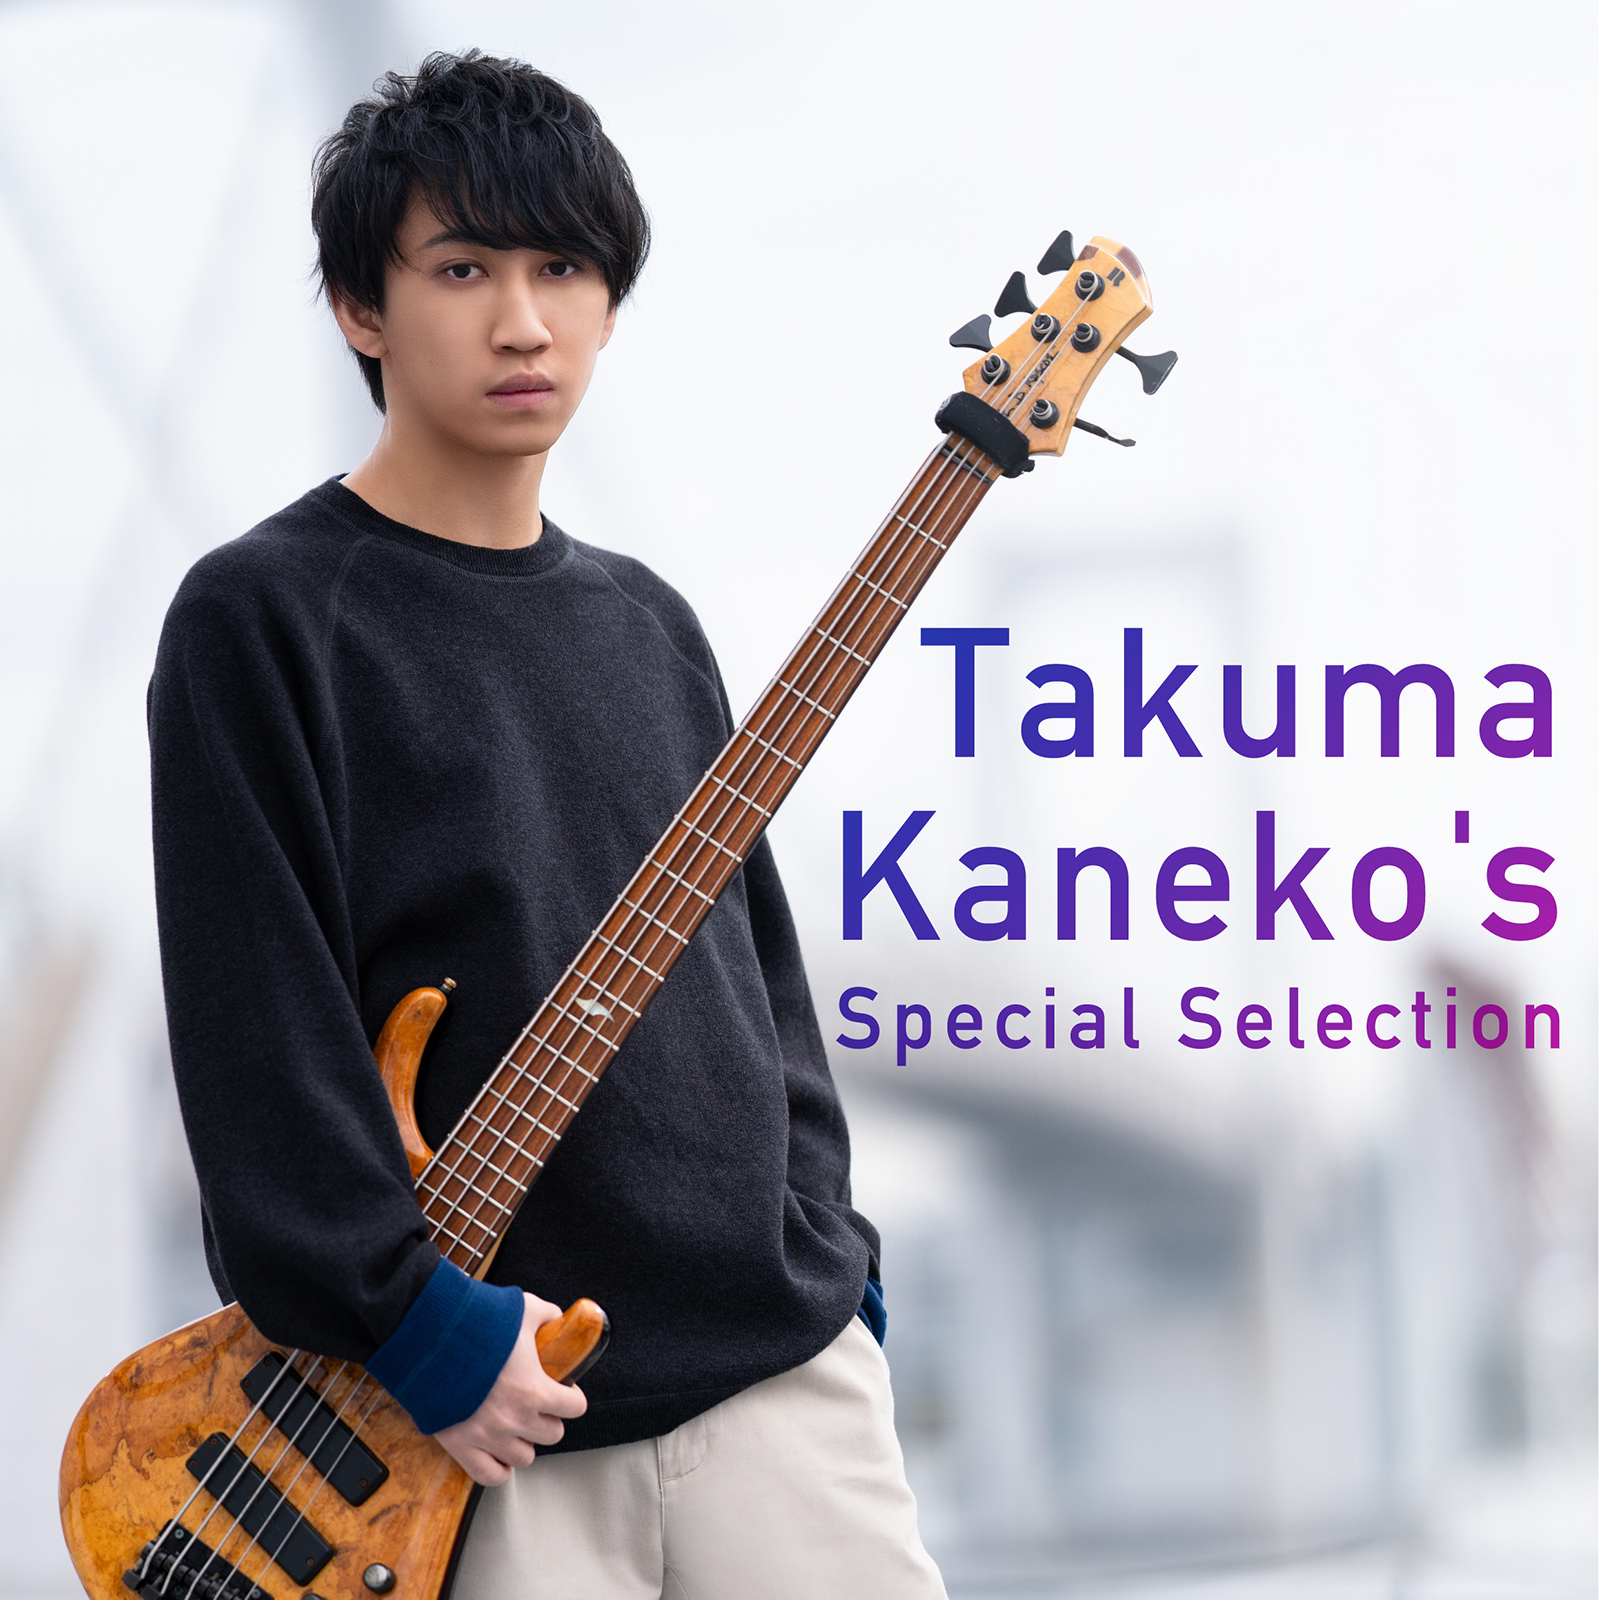 Takuma Kaneko's Special Selection ジャケット写真